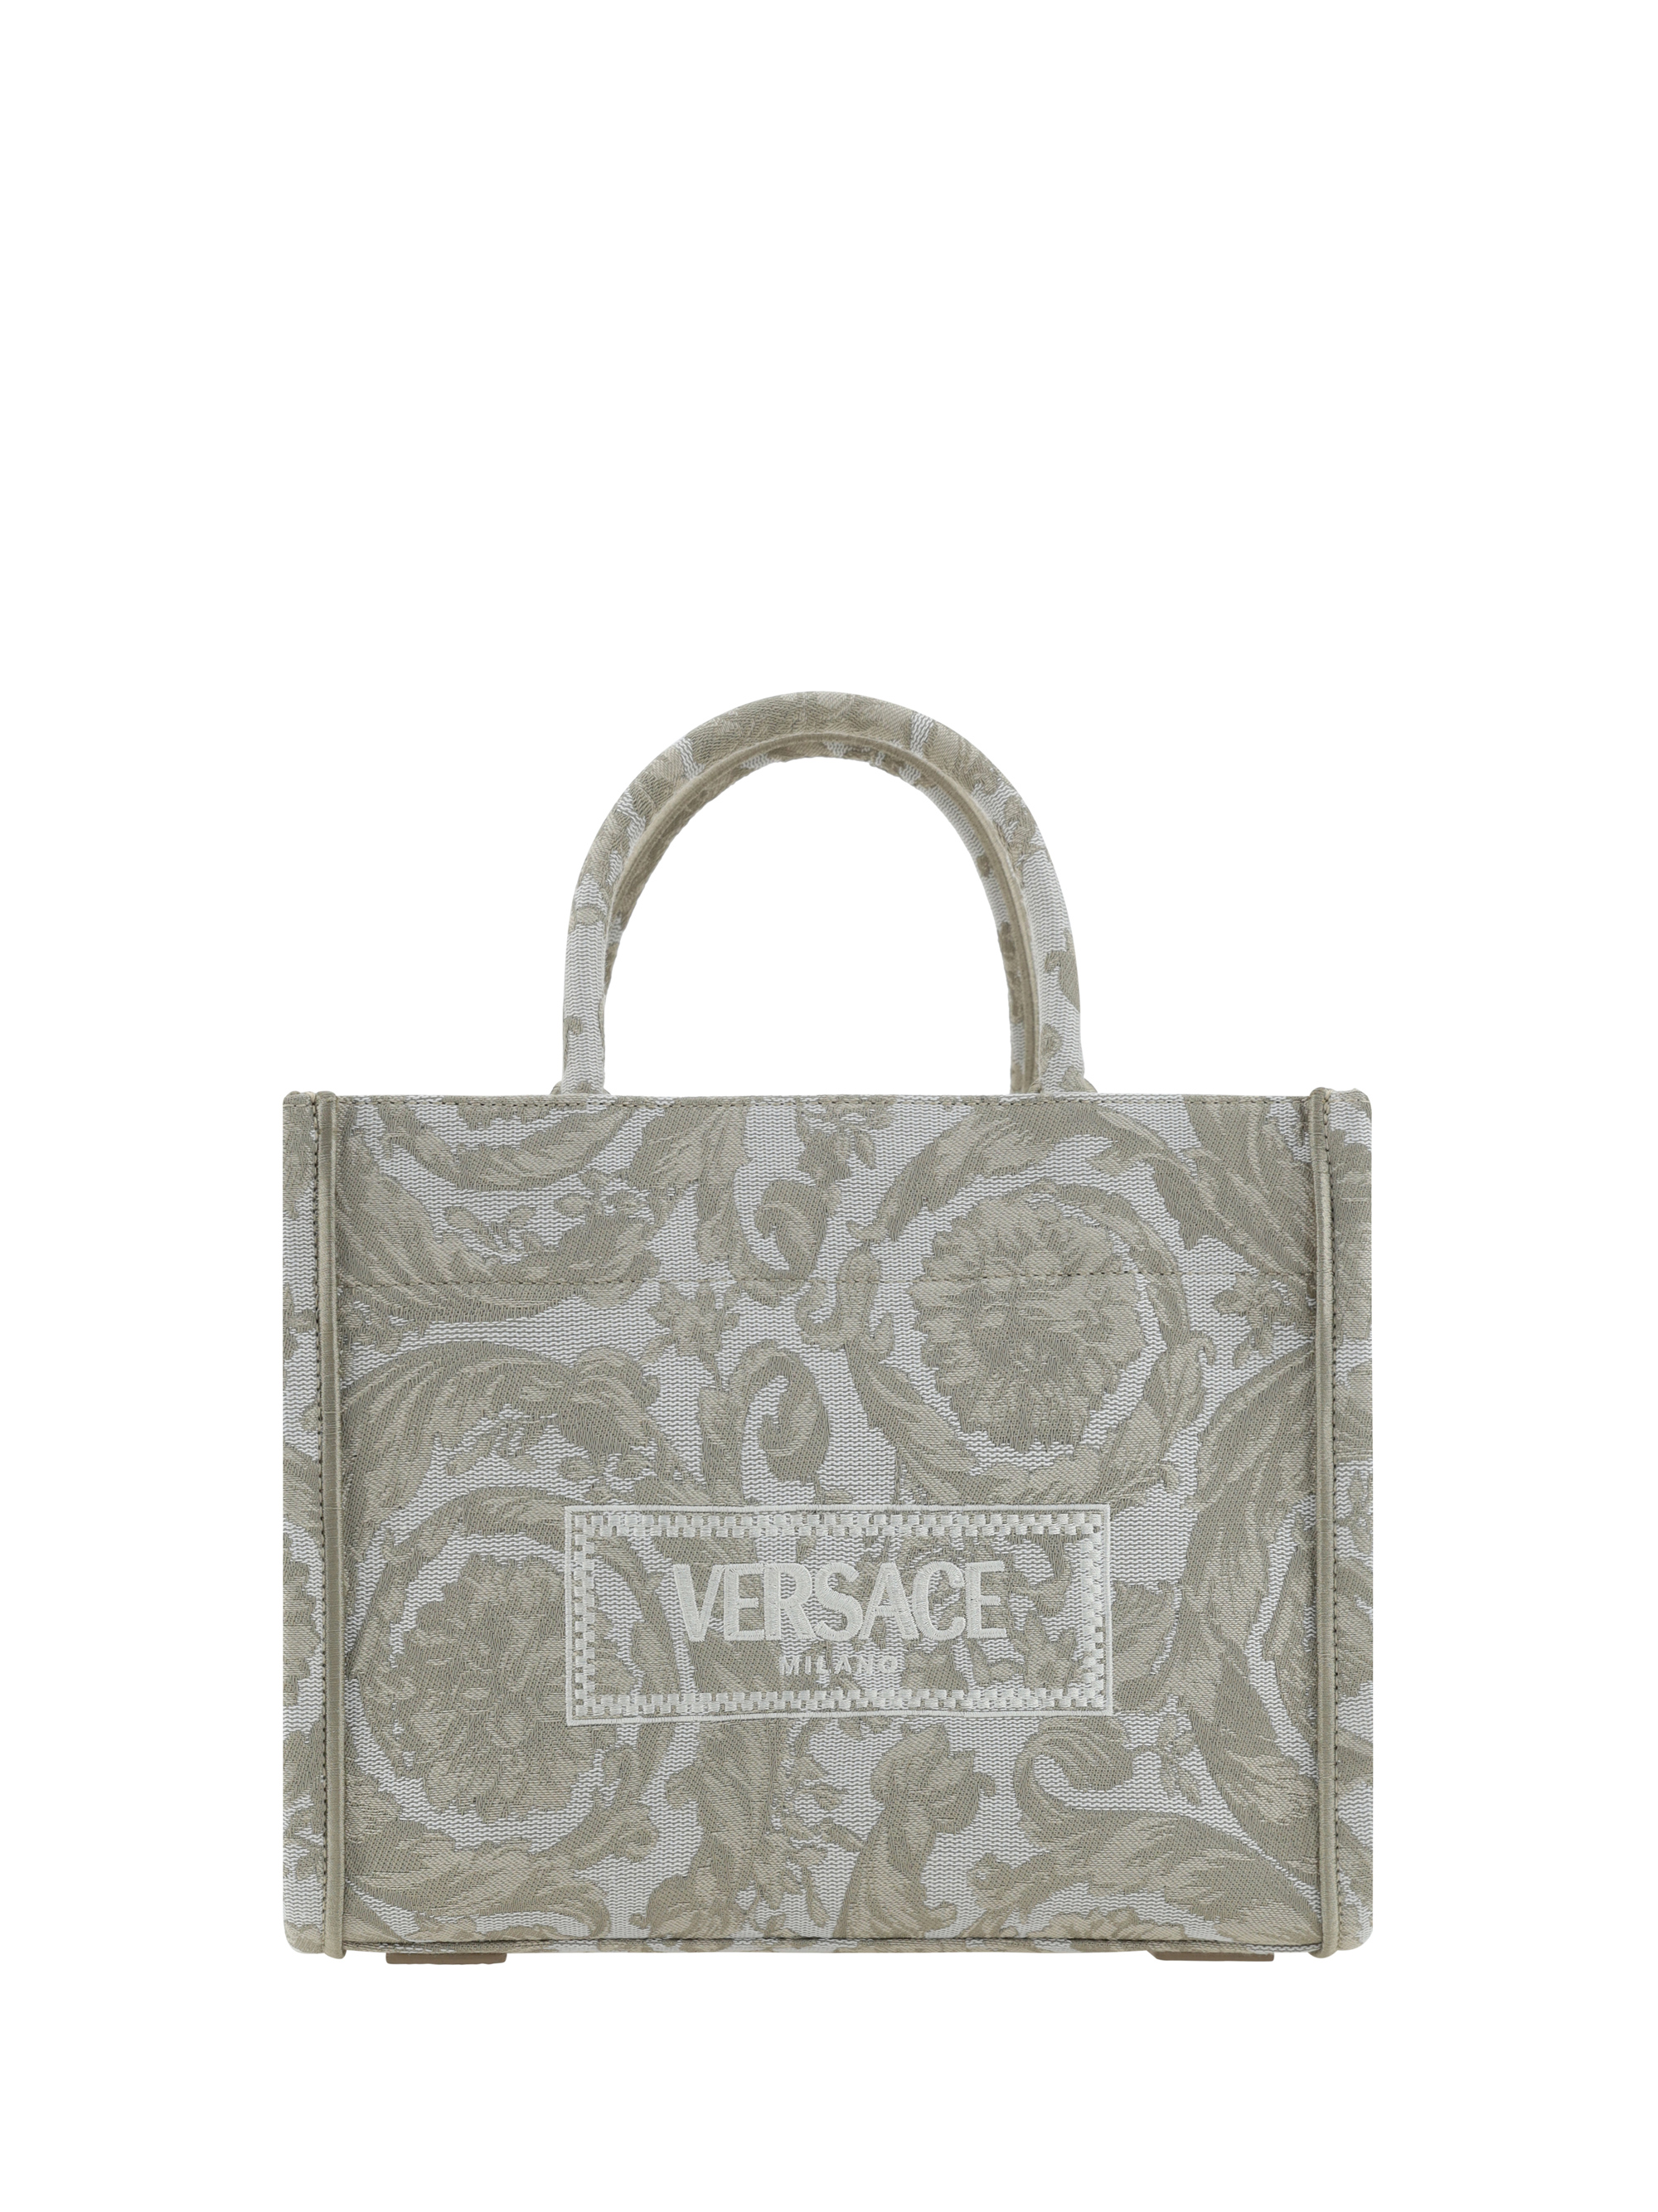 Versace Athena Handbag In Beige+beige- Gold